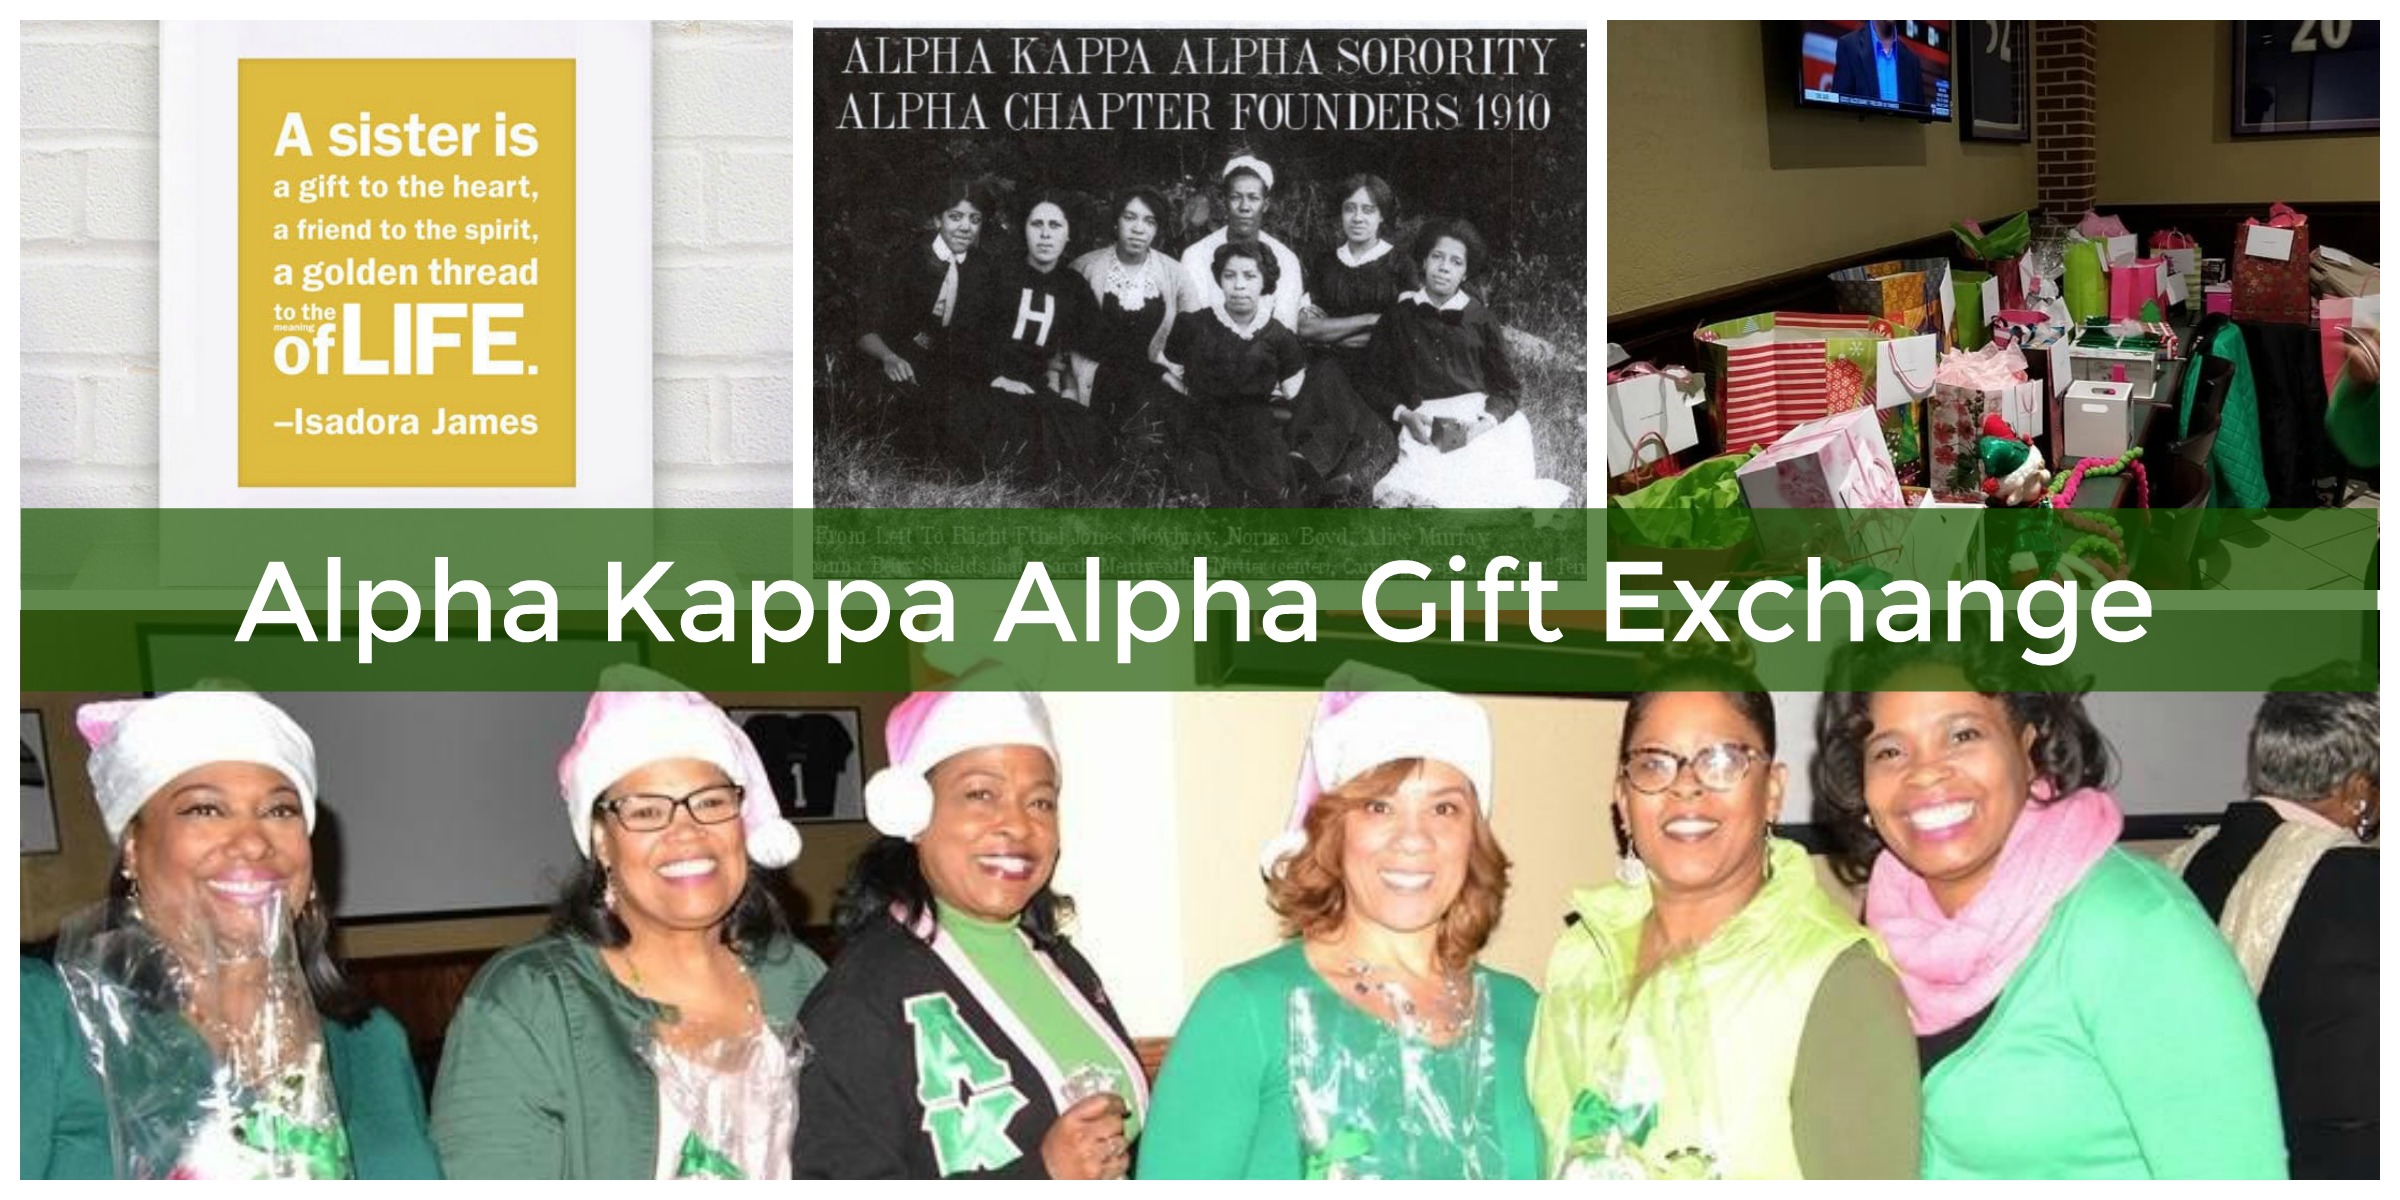 Alpha Kappa Alpha sorority sister gift exchange